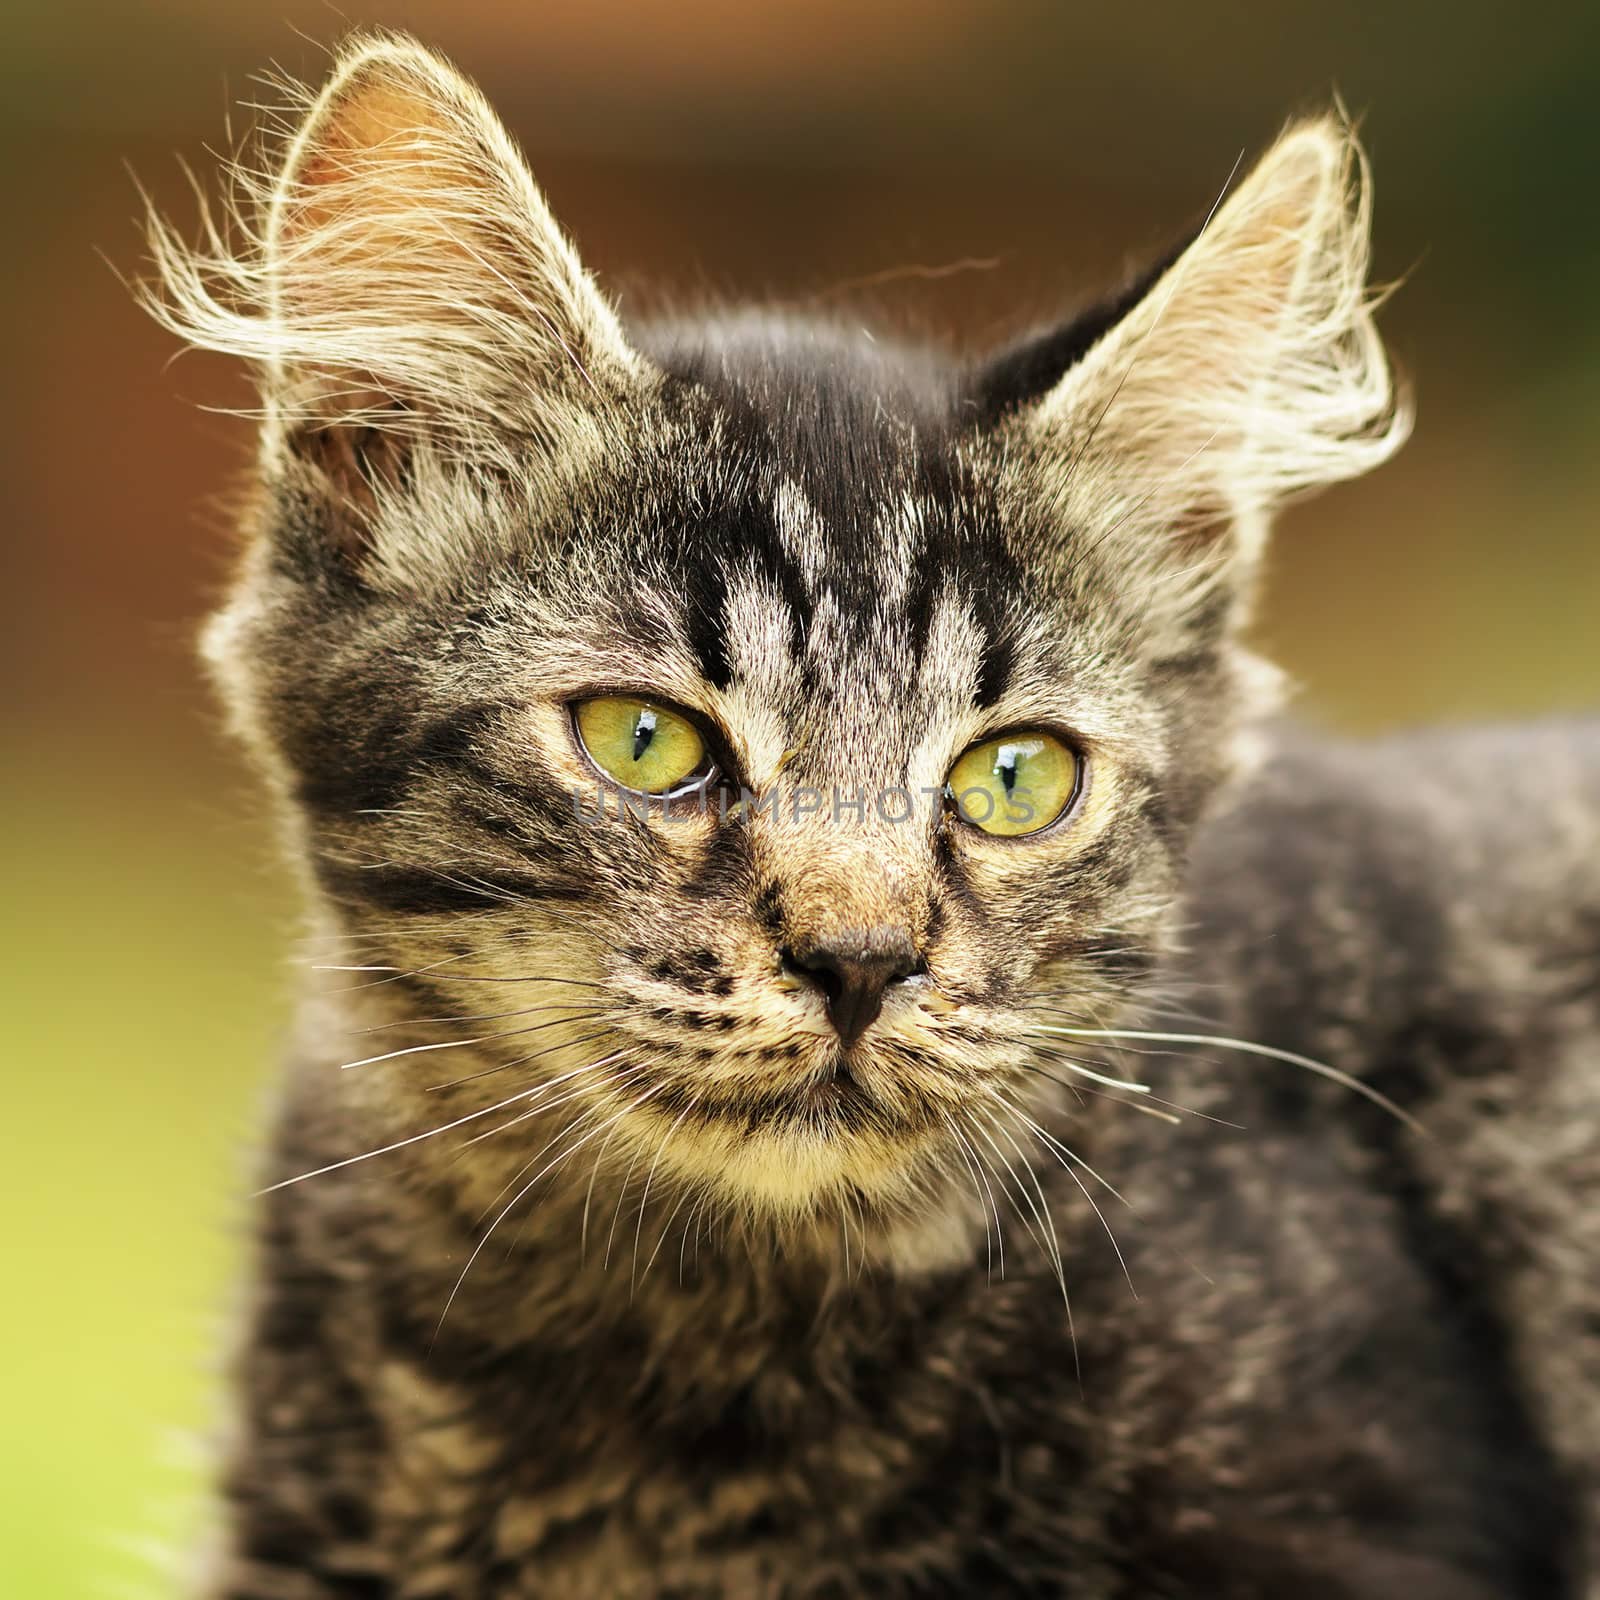 cute striped kitten portrait by taviphoto